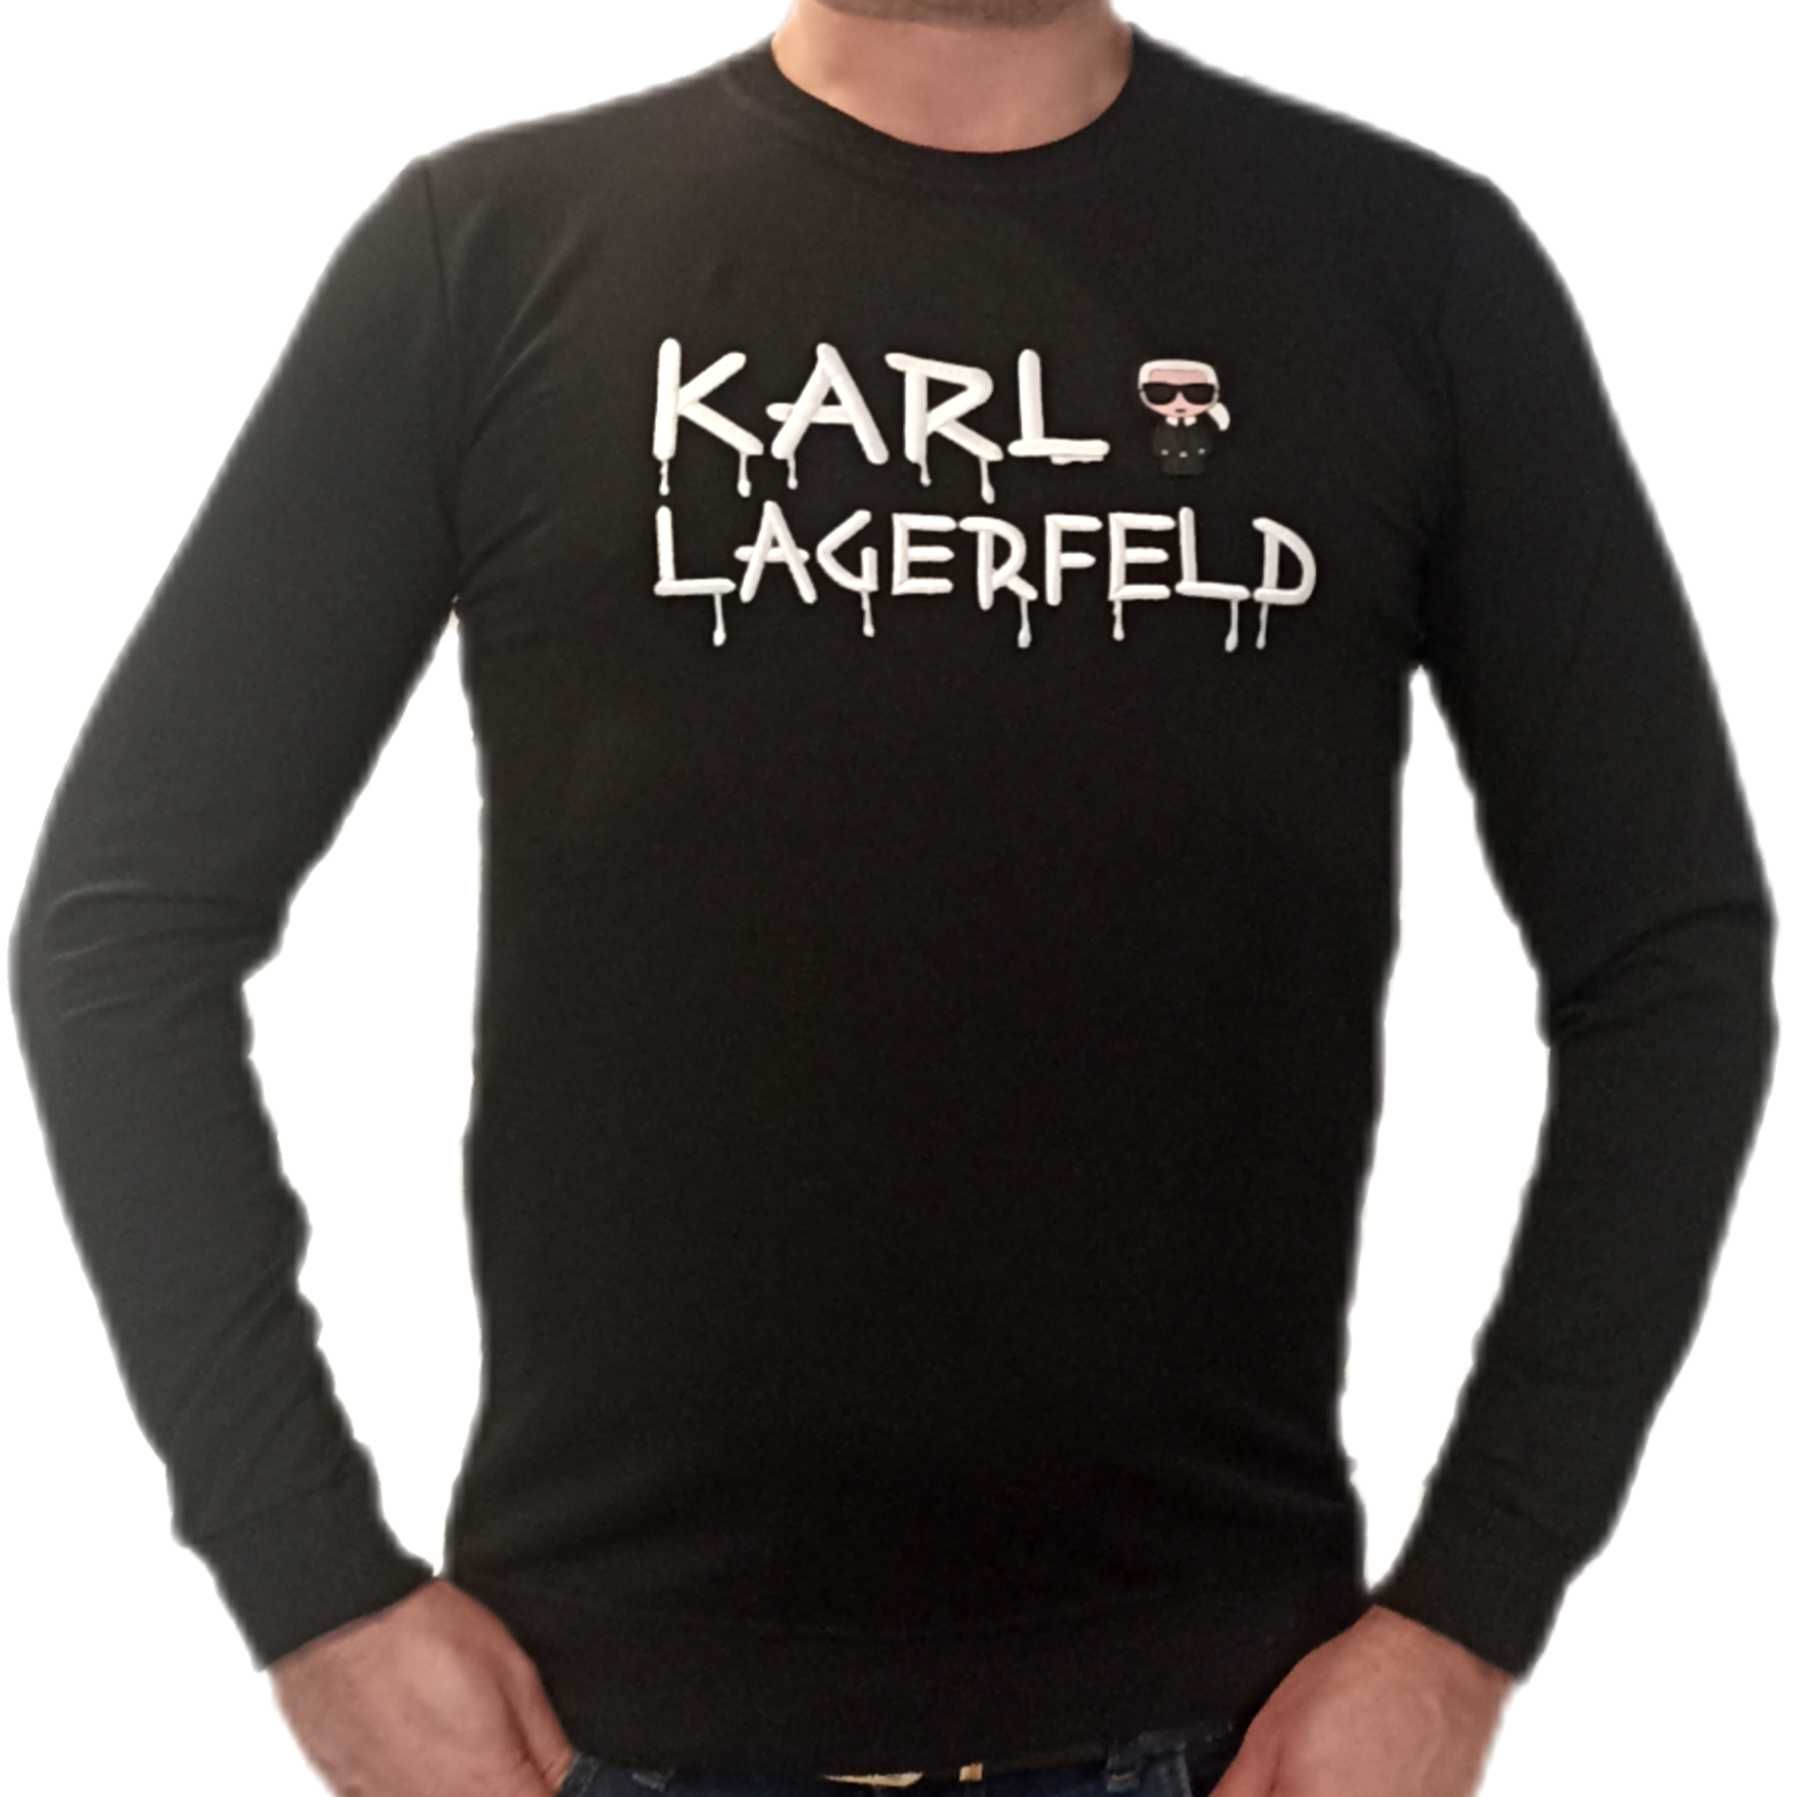 Karl Lagerfeld Bluza Czarna r.S,M,L,XL,XXL